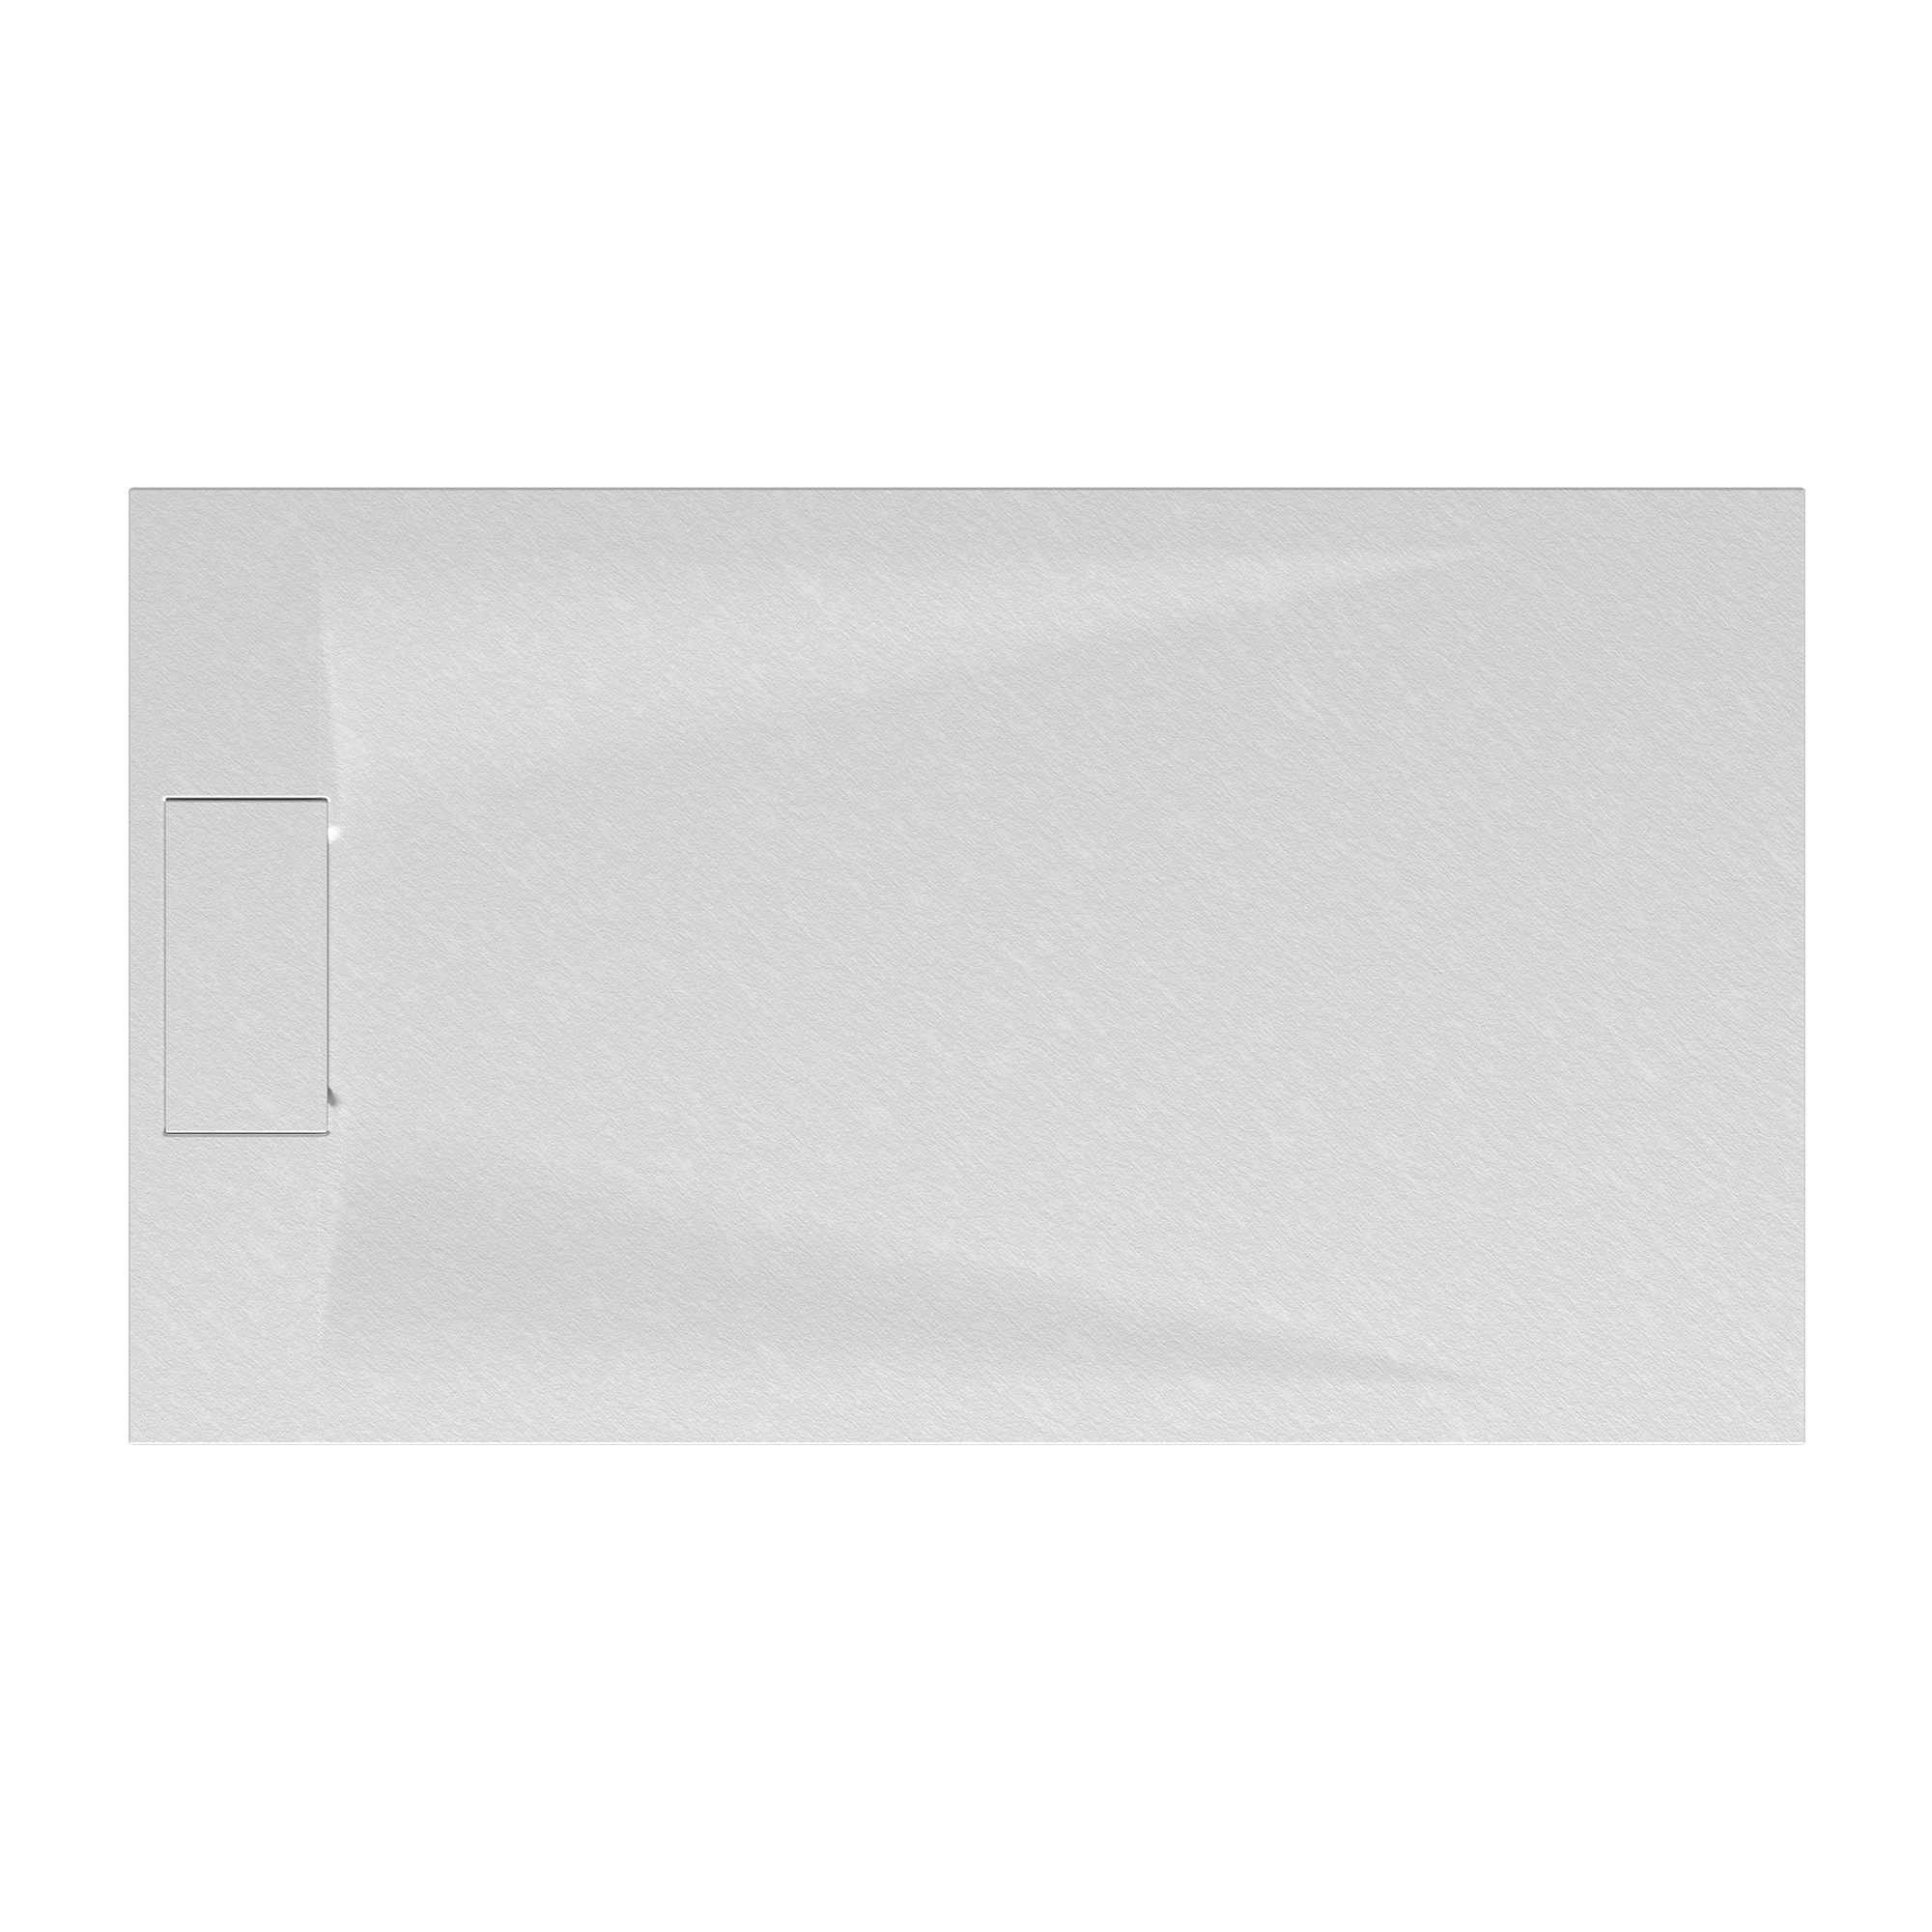 Duschwanne 'Lite Line' Steinoptik weiß 90 x 140 cm + product picture